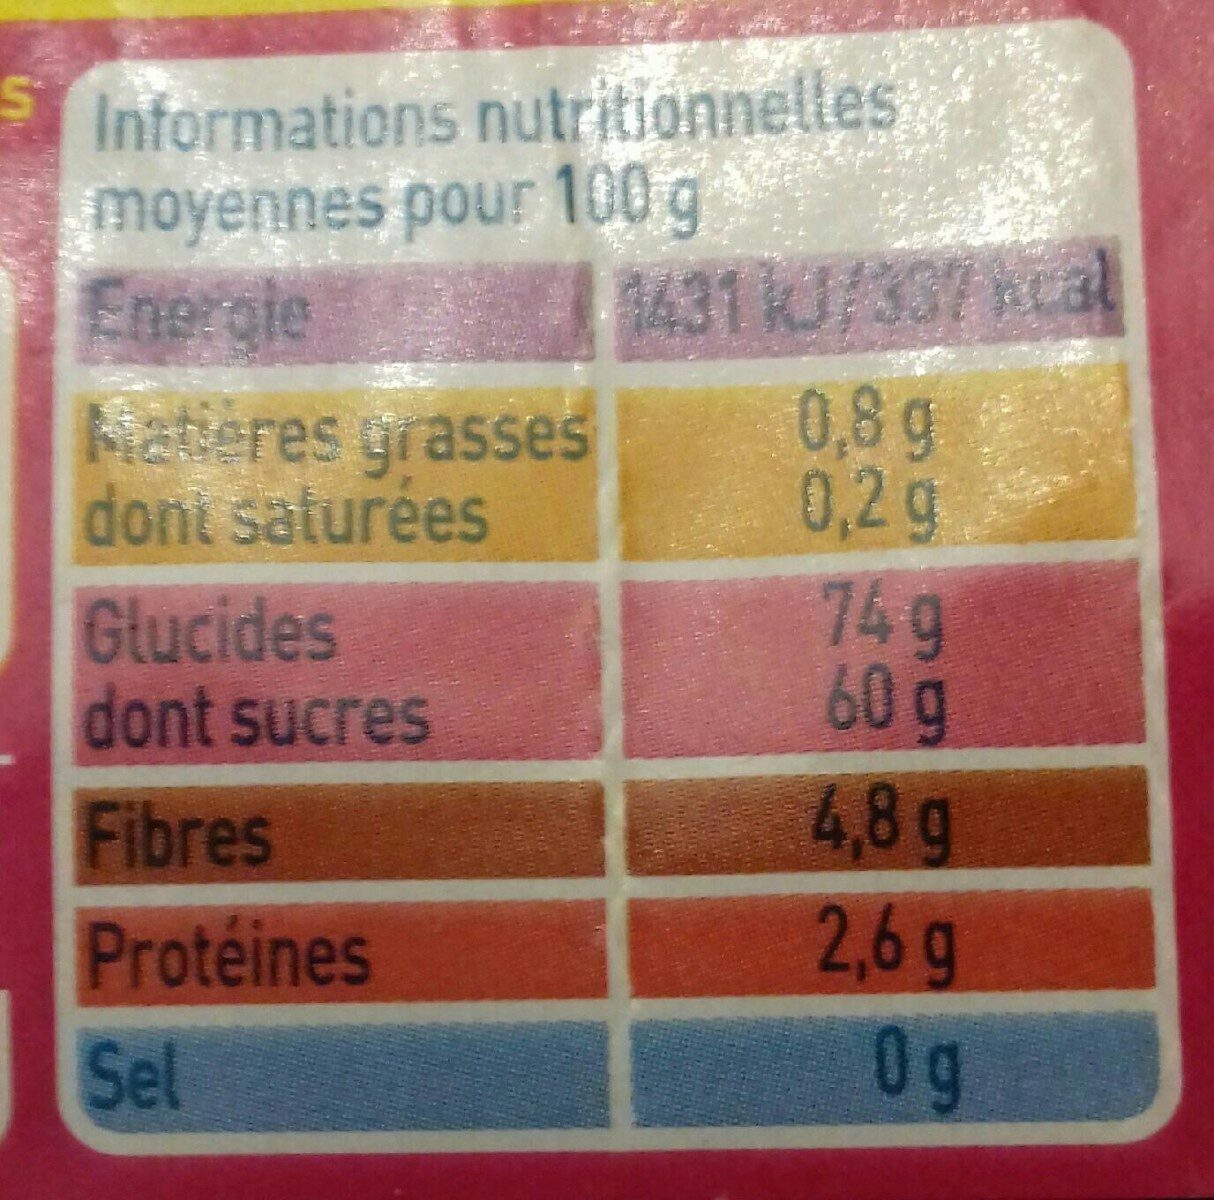 Raisins secs Sultanines - Información nutricional - fr